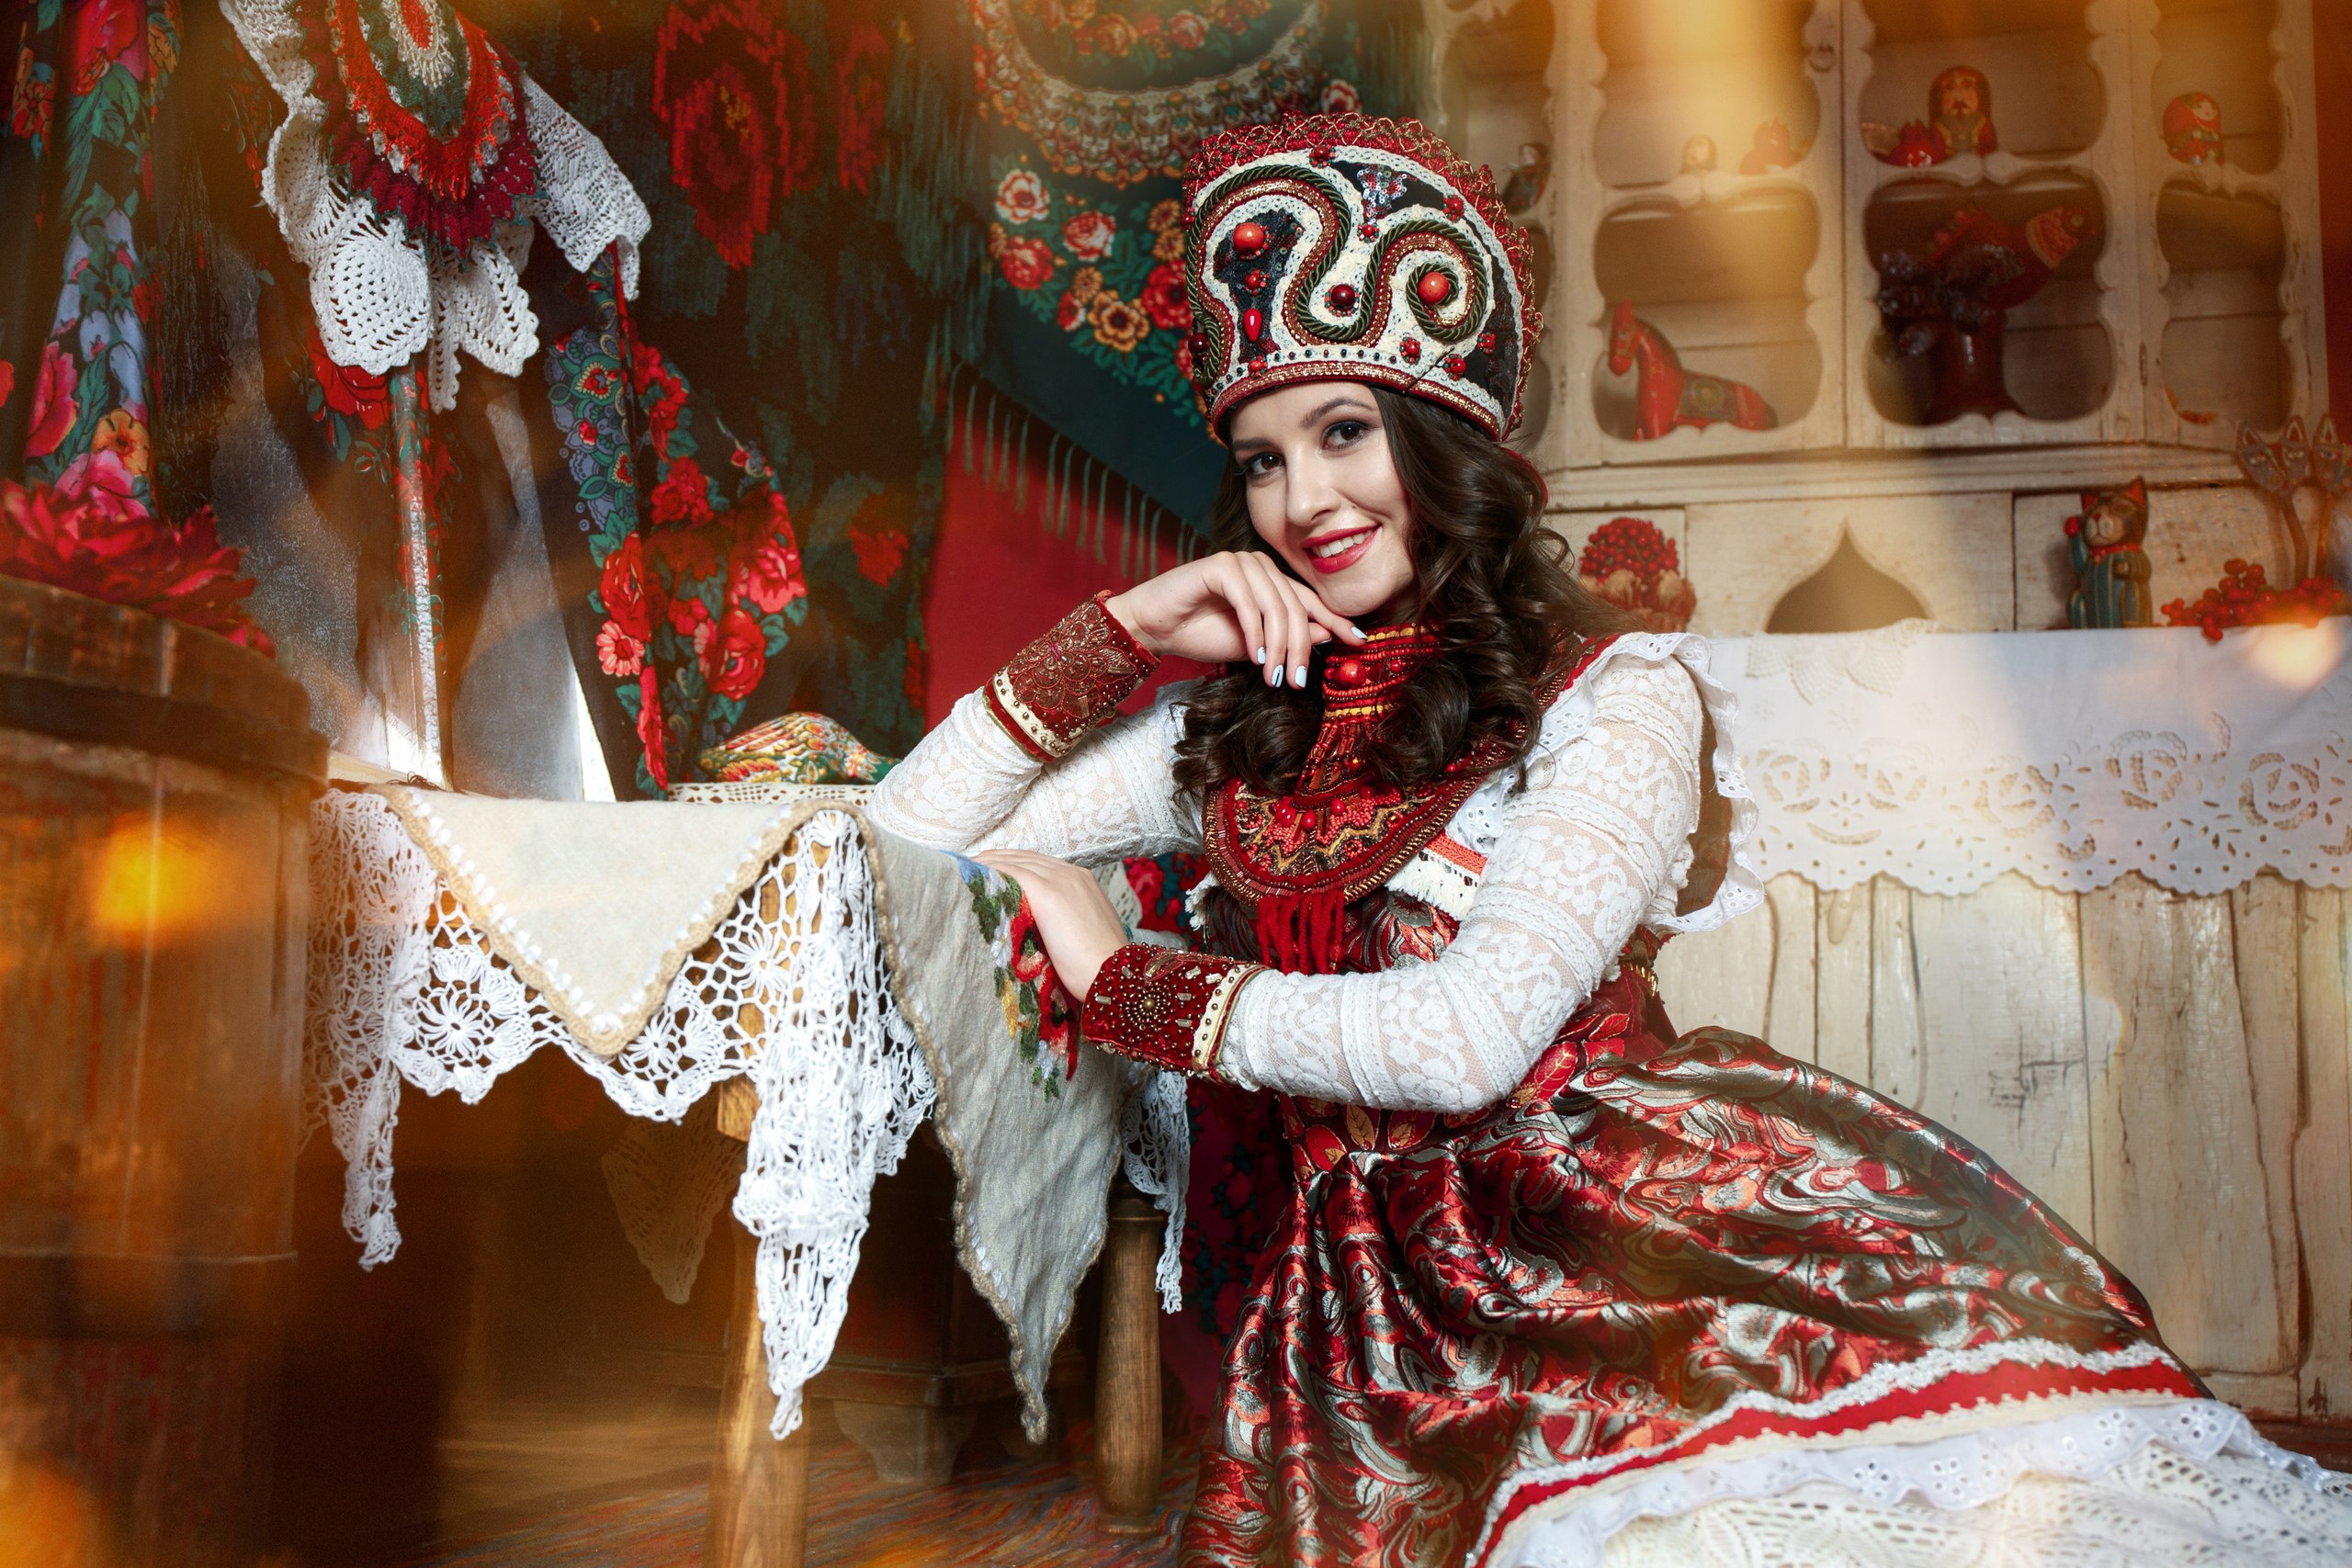 русский костюм женский народный с кокошником фото